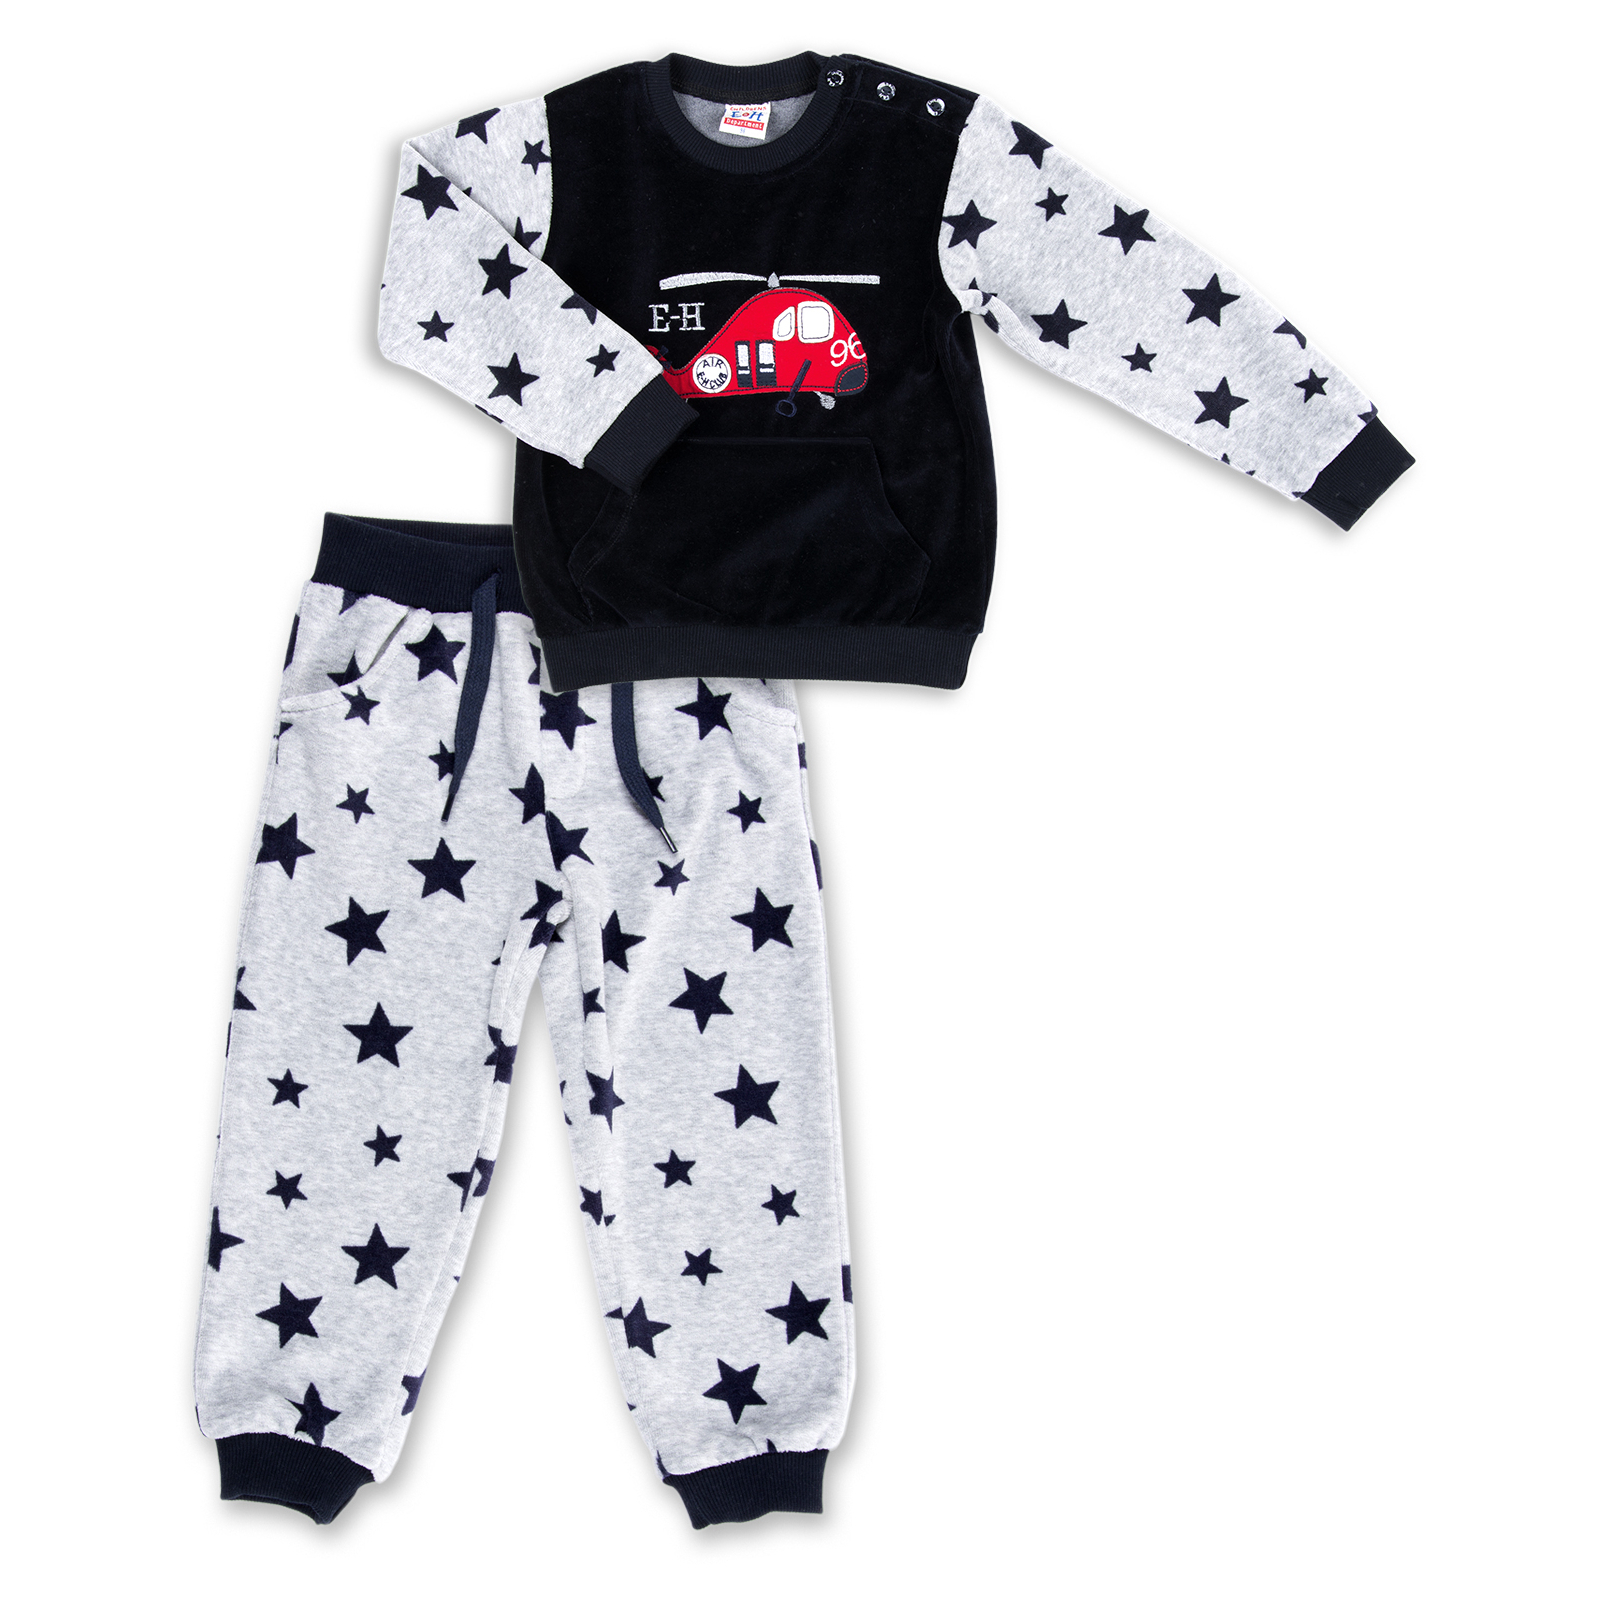 Набор детской одежды Breeze велюровый с вертолетом и штанишками в звездочку (8113-80/B-dark blue)